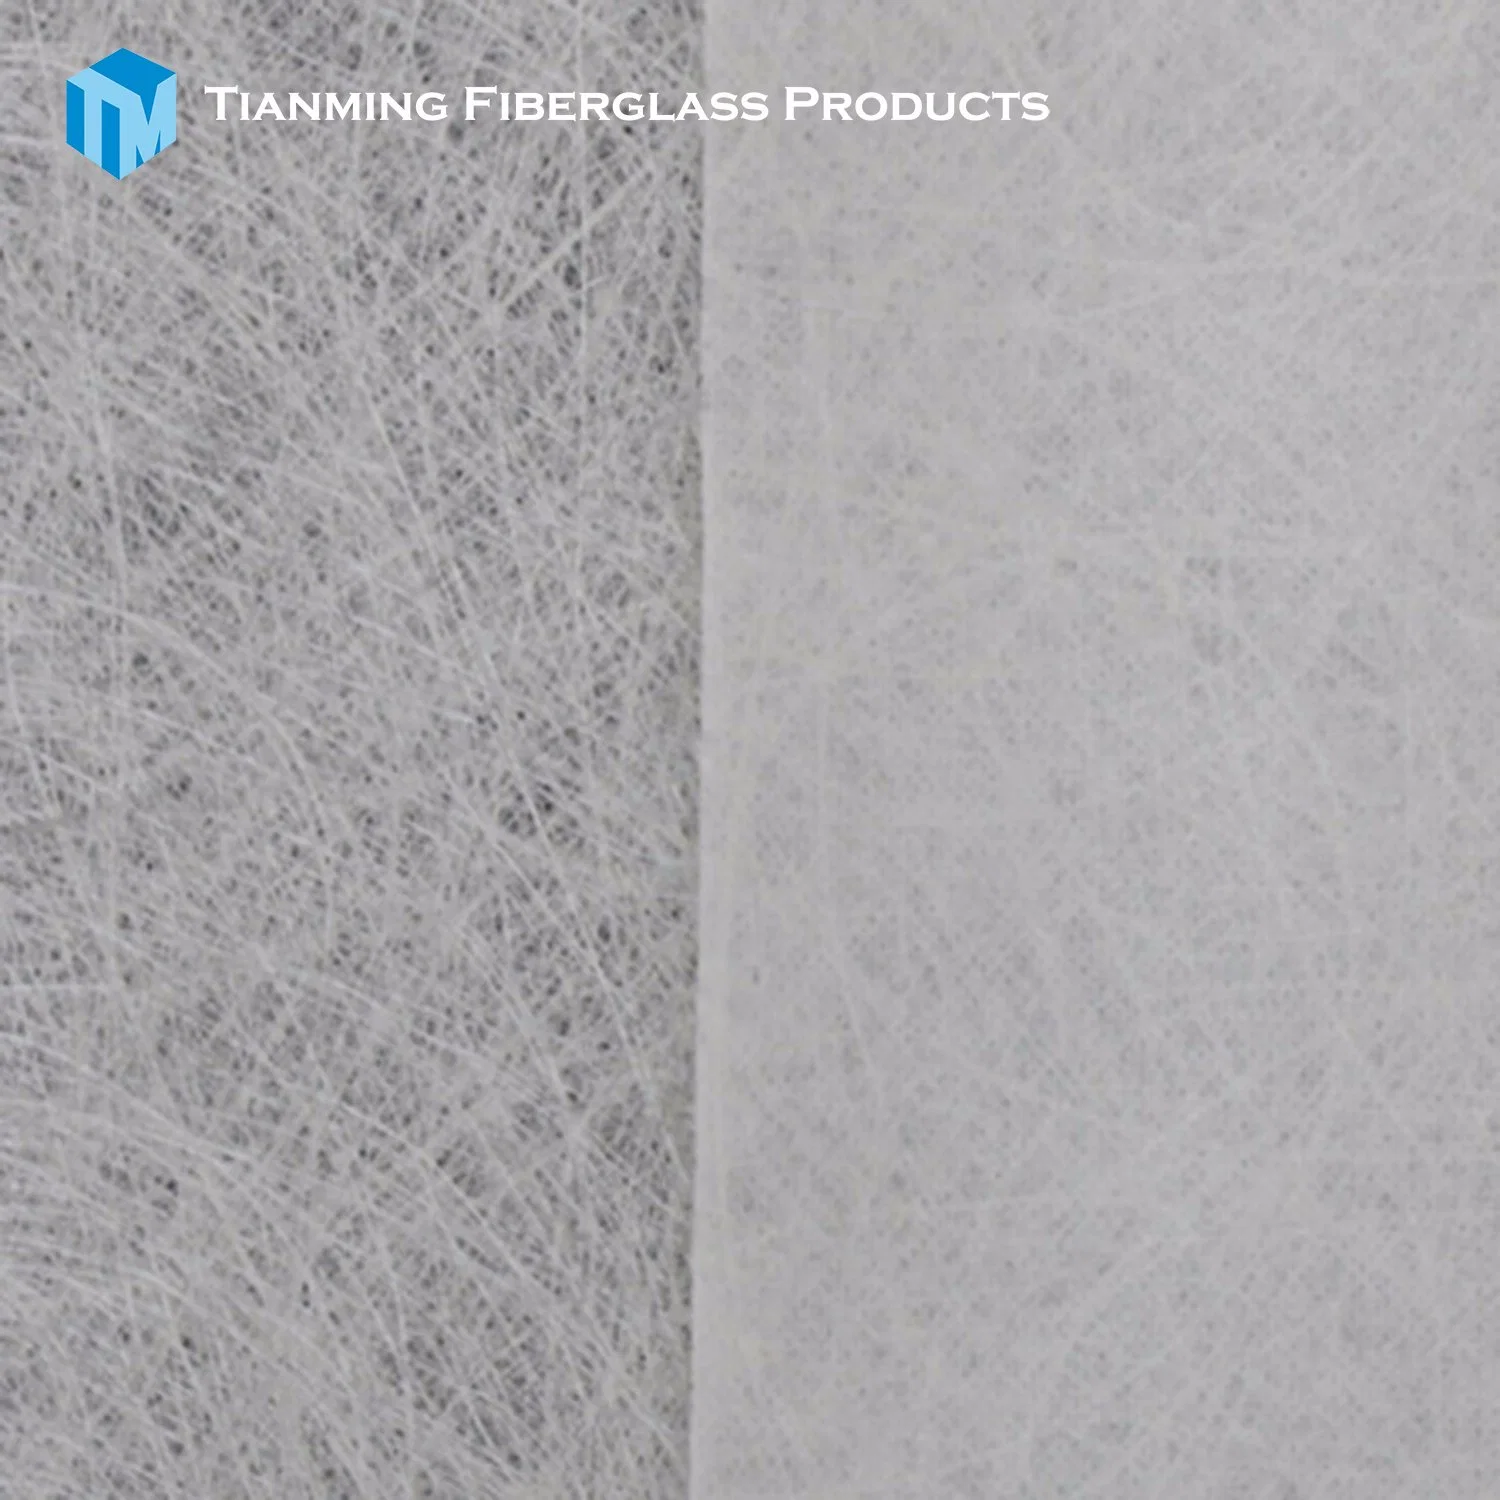 Fiberglass Continuous Filament and Polyester Surface Mat; Fiberglass Composite Mat